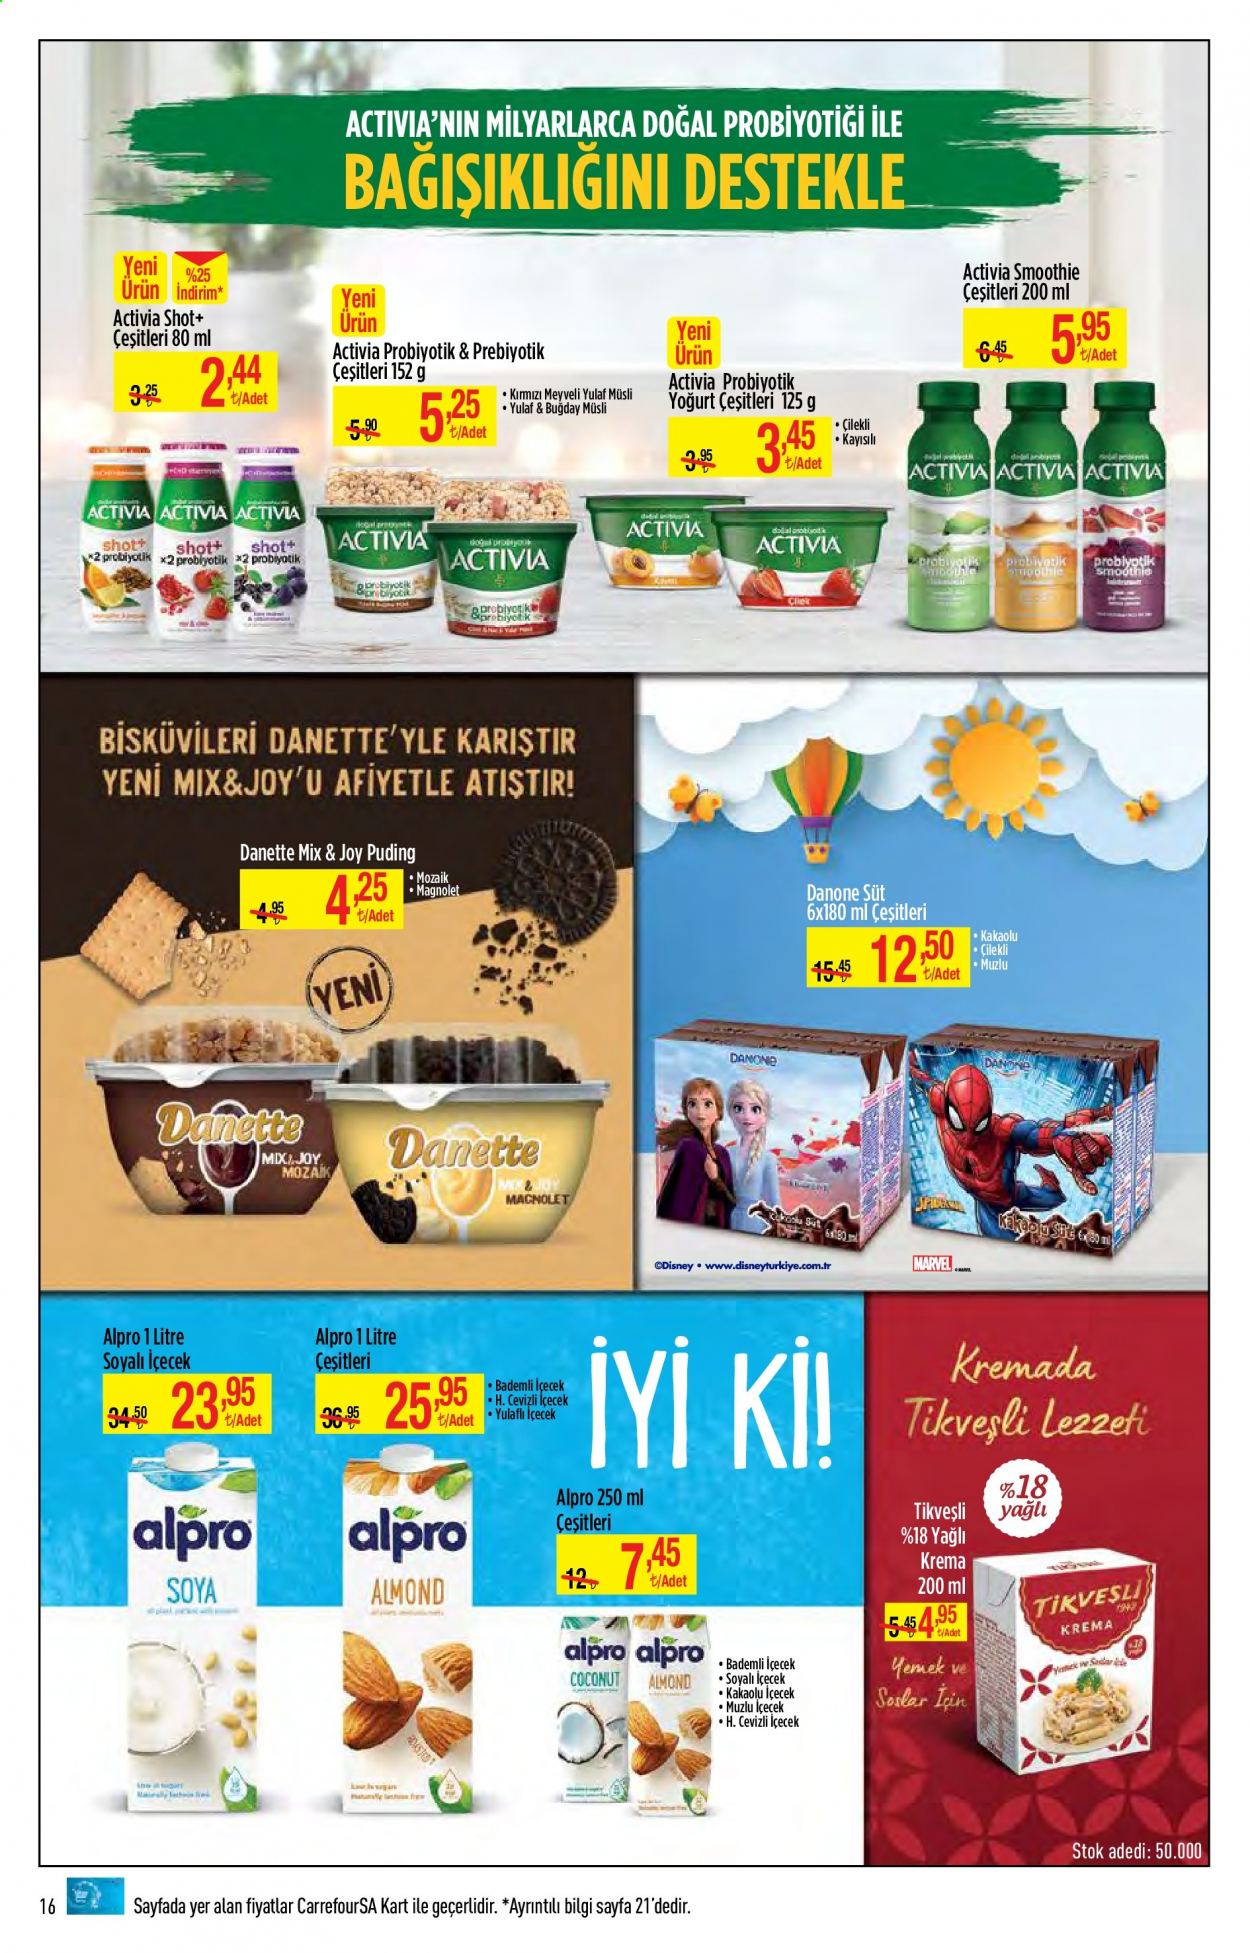 thumbnail - Carrefour aktüel ürünler, broşür  - 5.3.2021 - 5.14.2021 - Satıştaki ürünler - Tikveşli, Danone, Activia, Alpro, yoğurt, süt, krema, müsli. Sayfa 16.